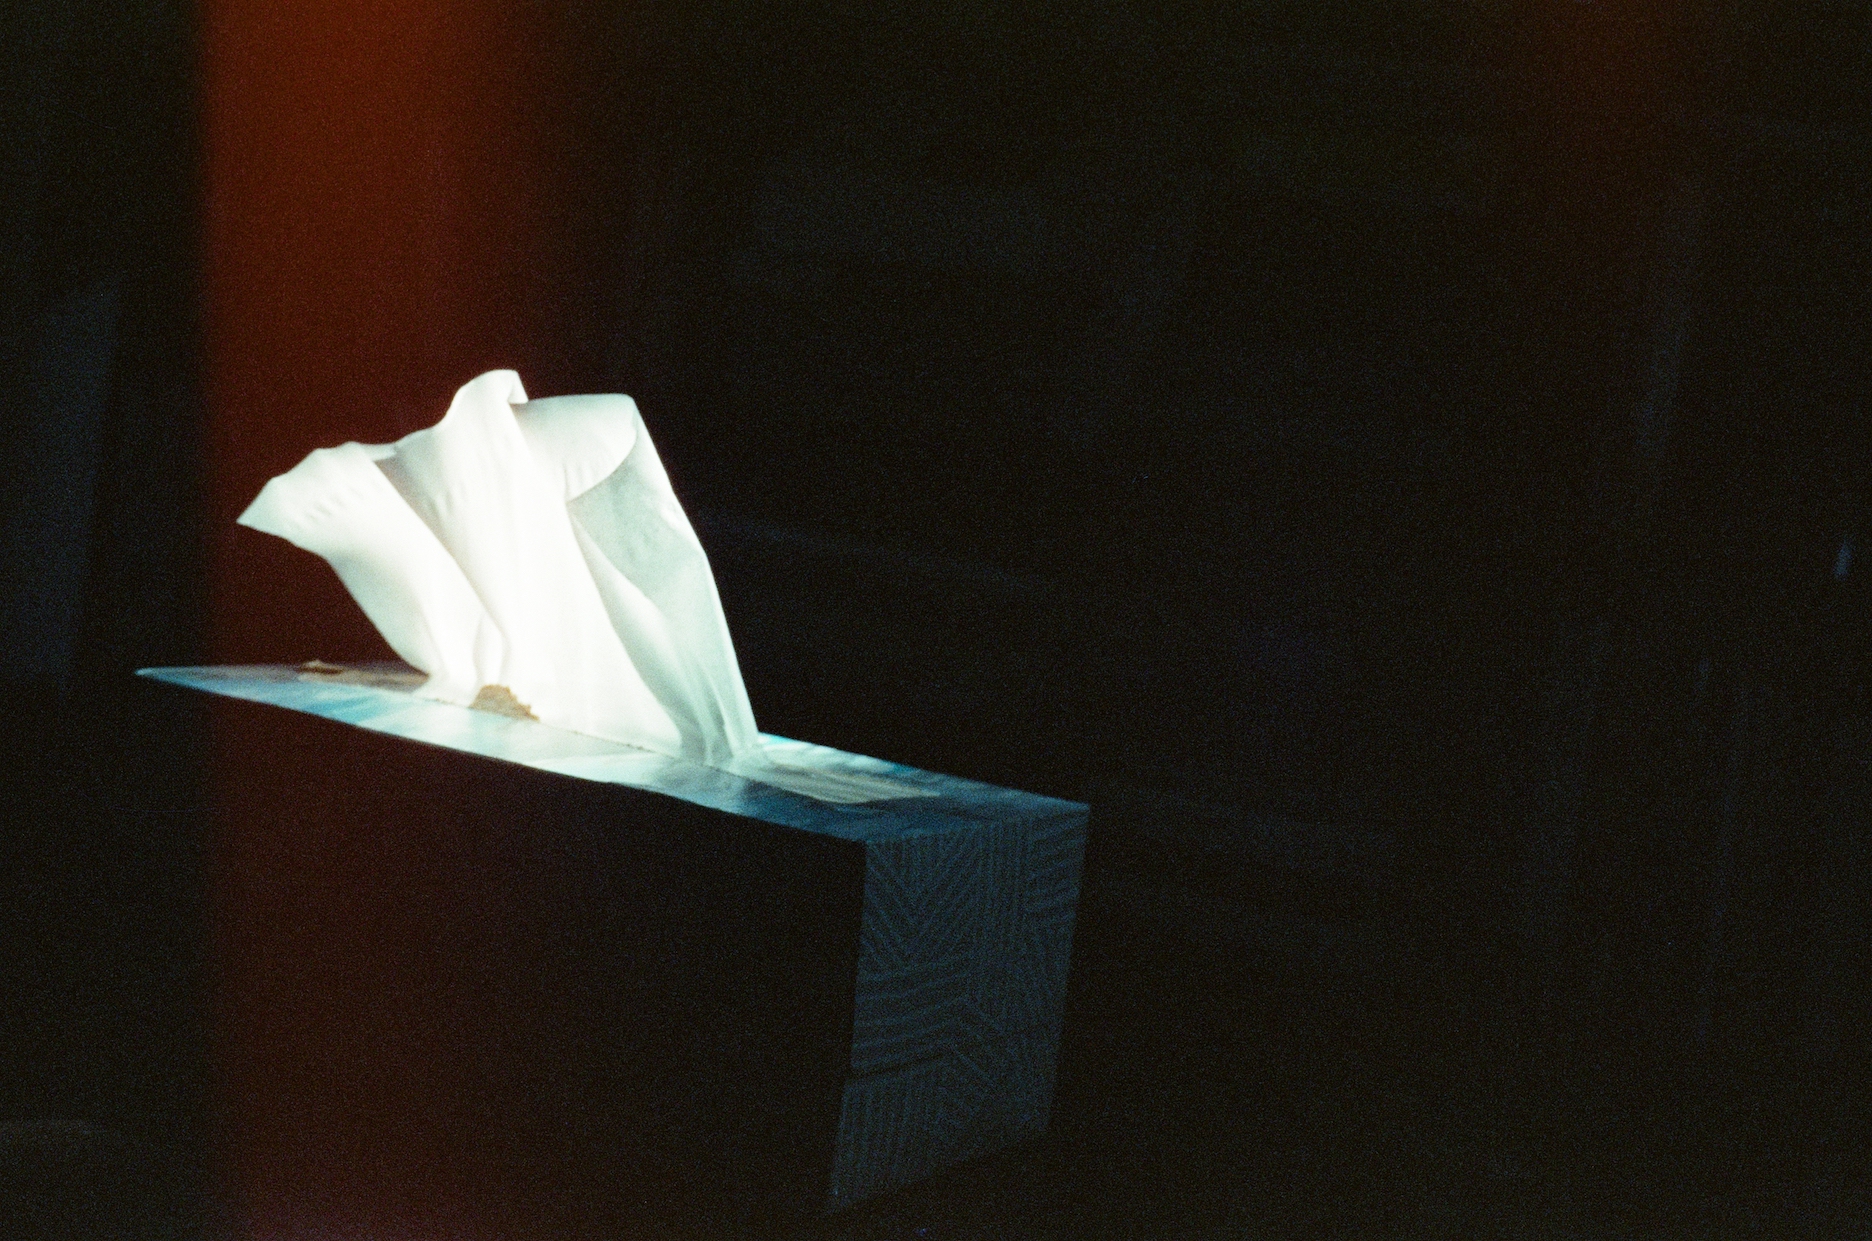 Finding light or Still life of an illuminated tissue box, 2021, Cinestill 800t Color Negative Film